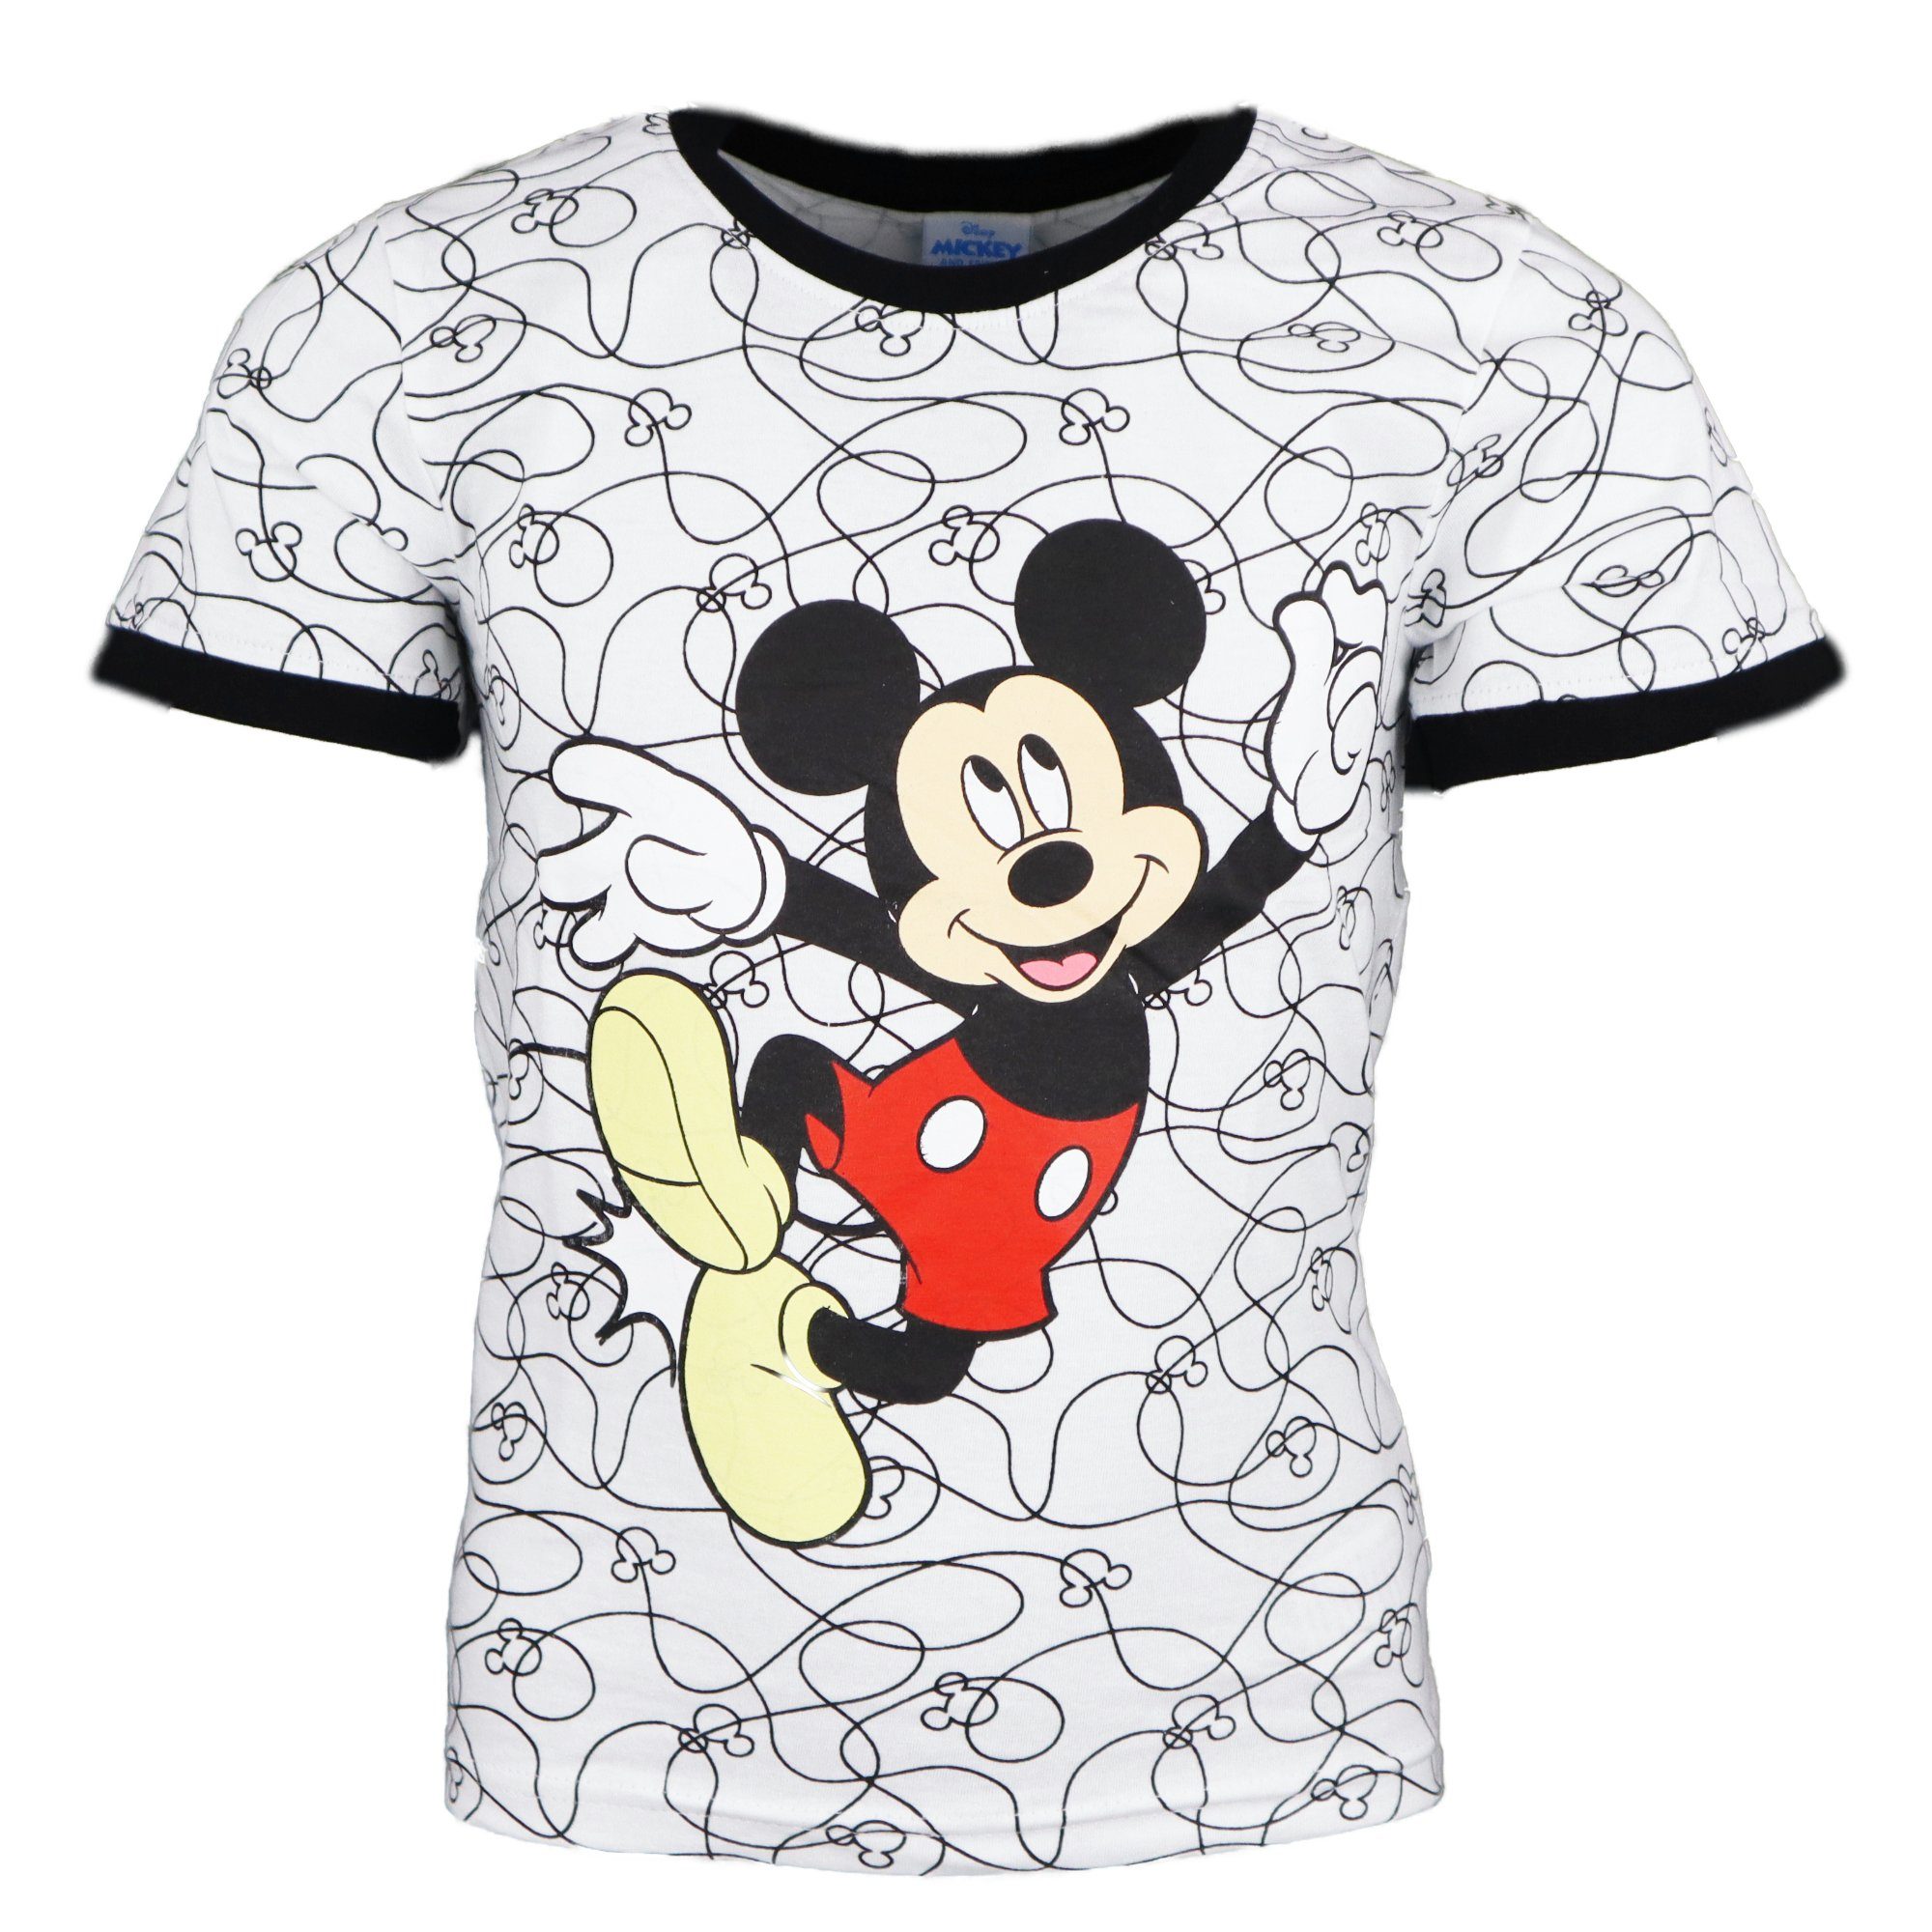 Mouse 128, Kinder Mickey 98 Jungen Mickey Baumwolle bis Gr. 100% kurzarm Print-Shirt Disney T-Shirt Maus